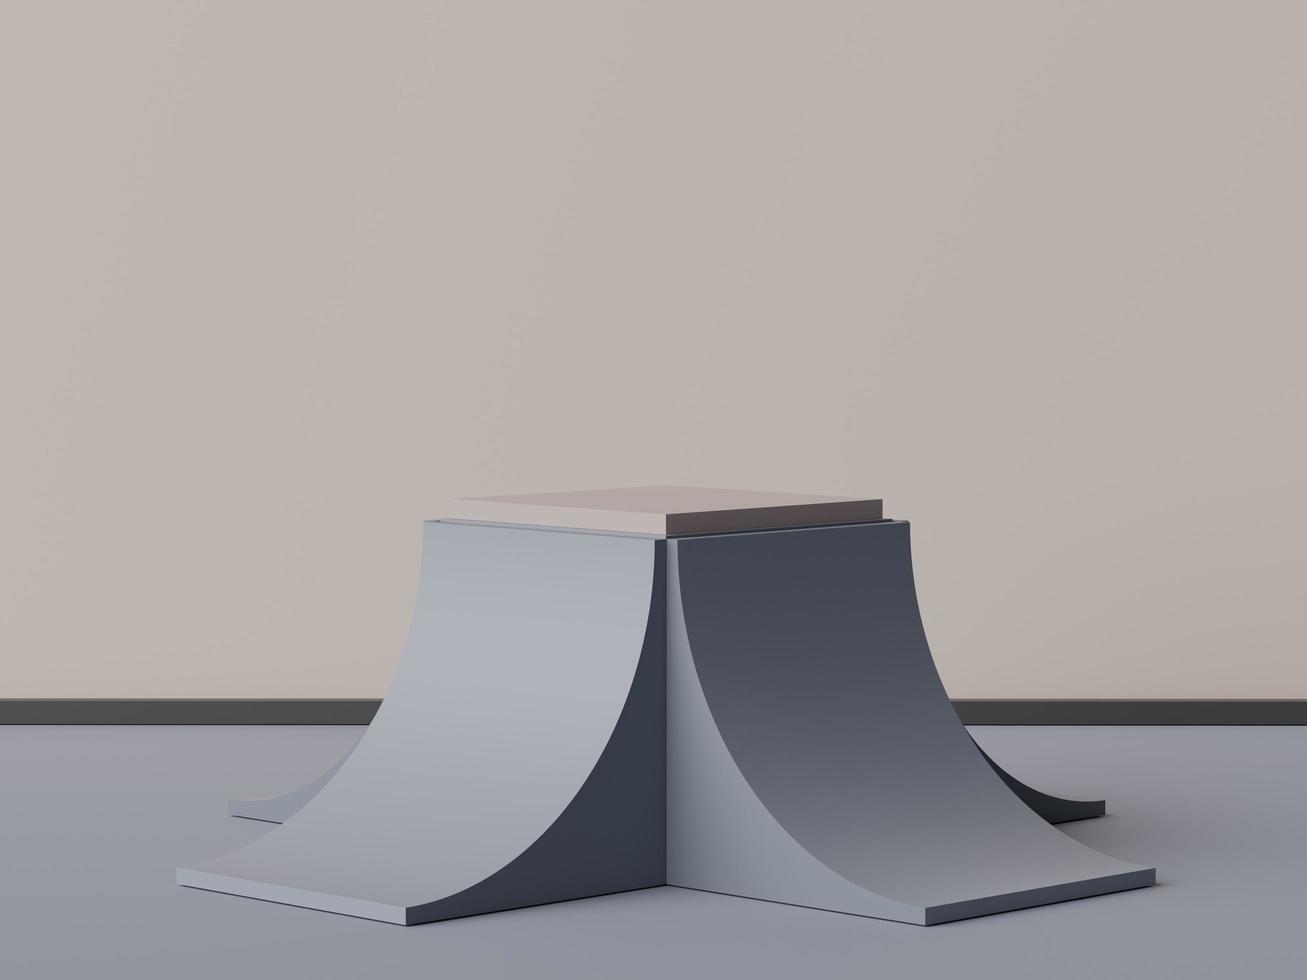 3D-rendering av minimal scen av vit tomt podium med jordfärger färgtema. displayställ för produktpresentation mock up och kosmetisk reklam. foto